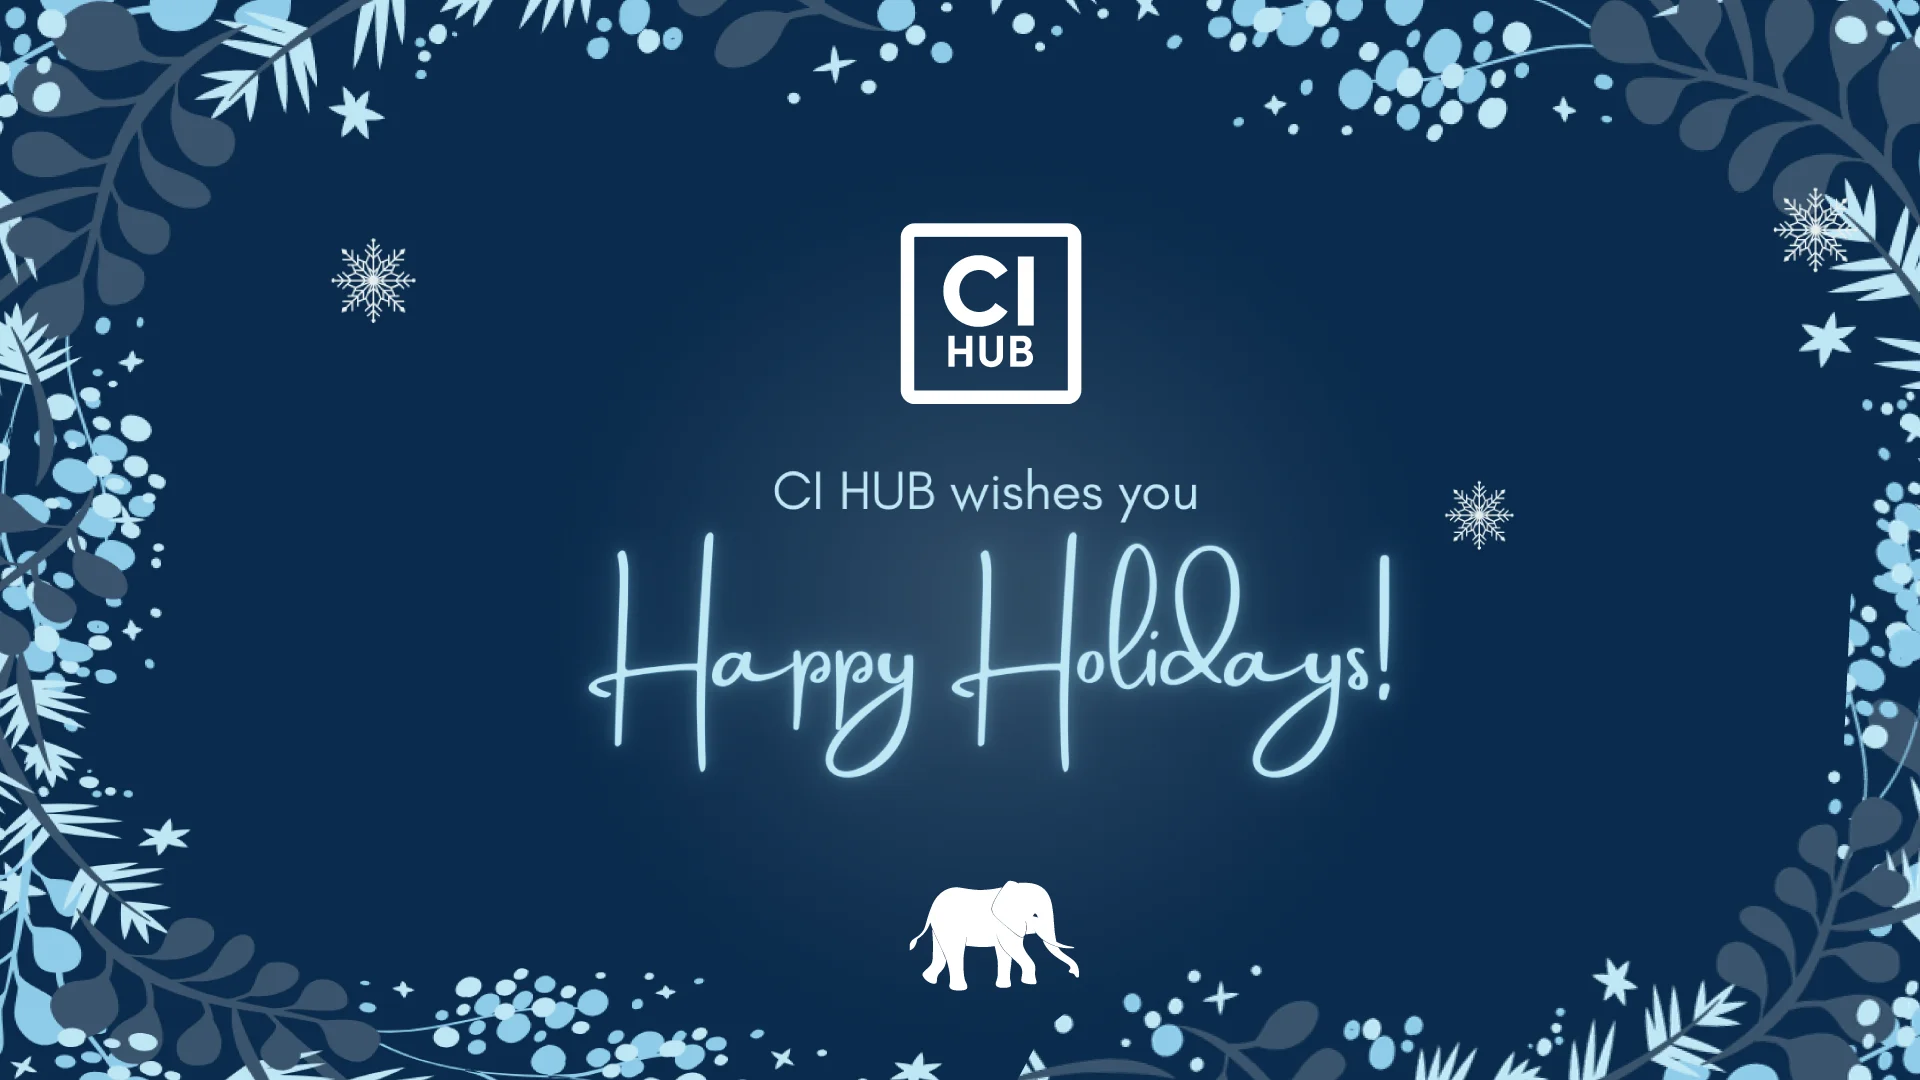 Happy Holidays from CI HUB